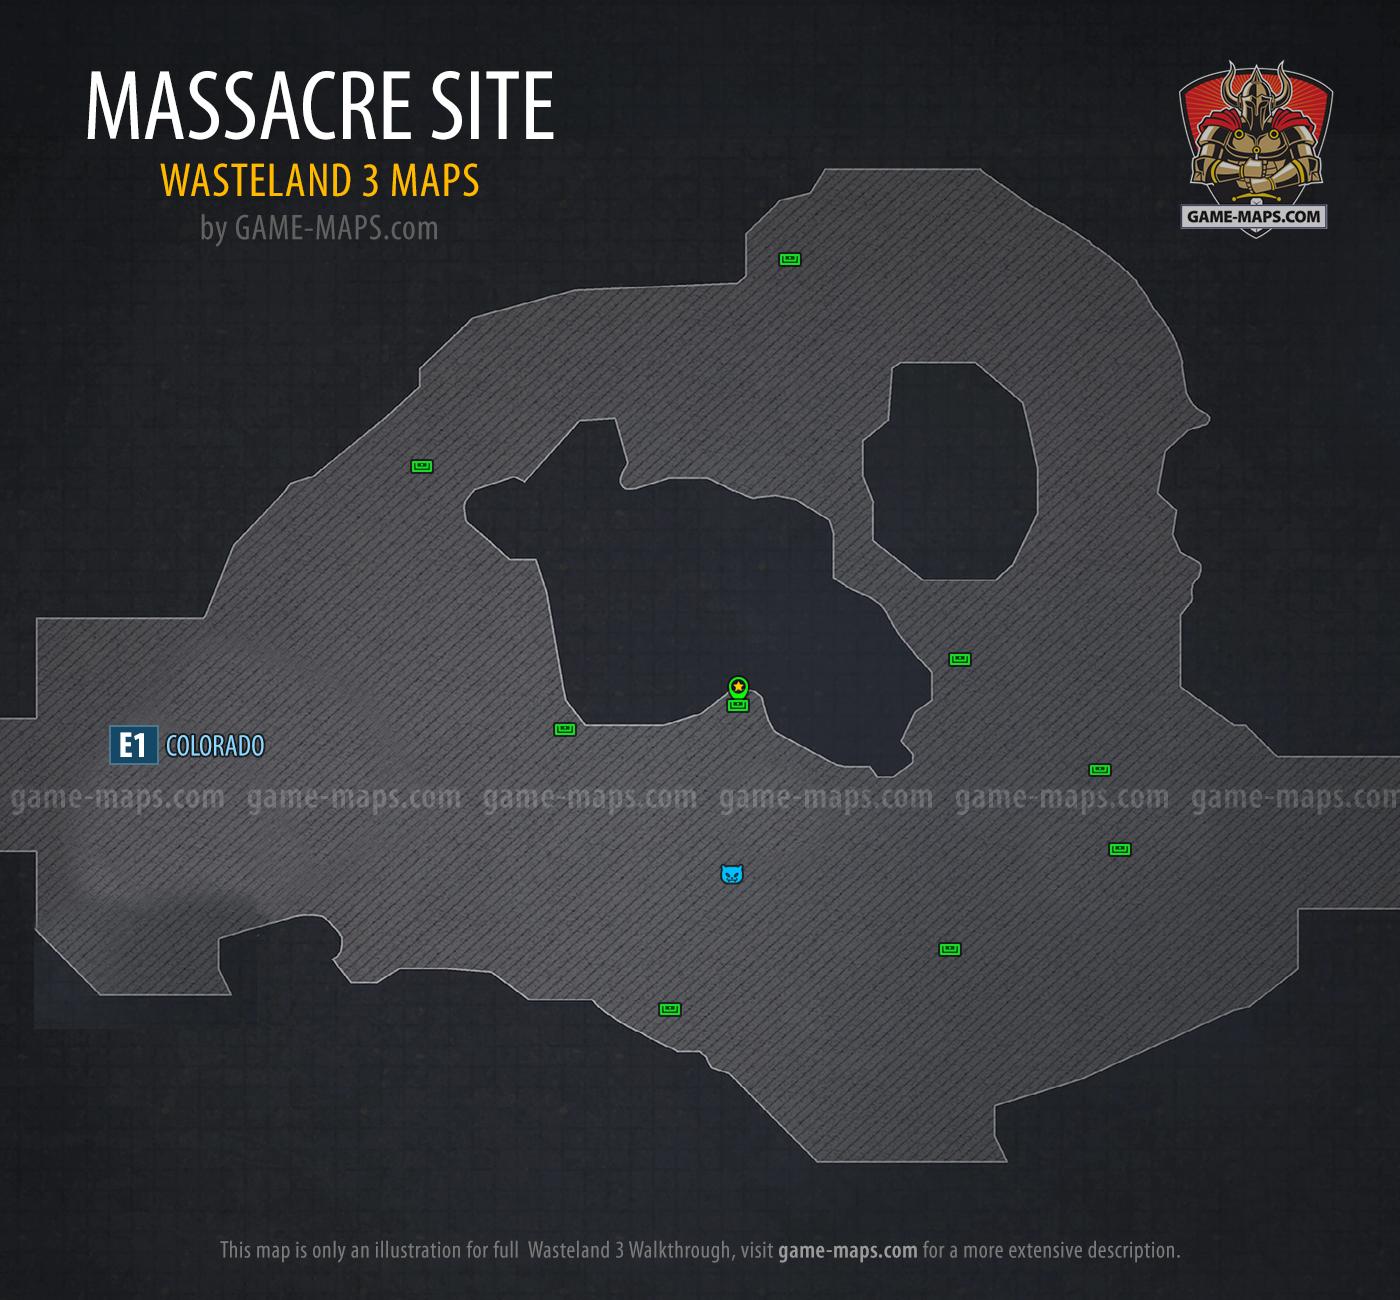 Massacre Site Map - Wasteland 3